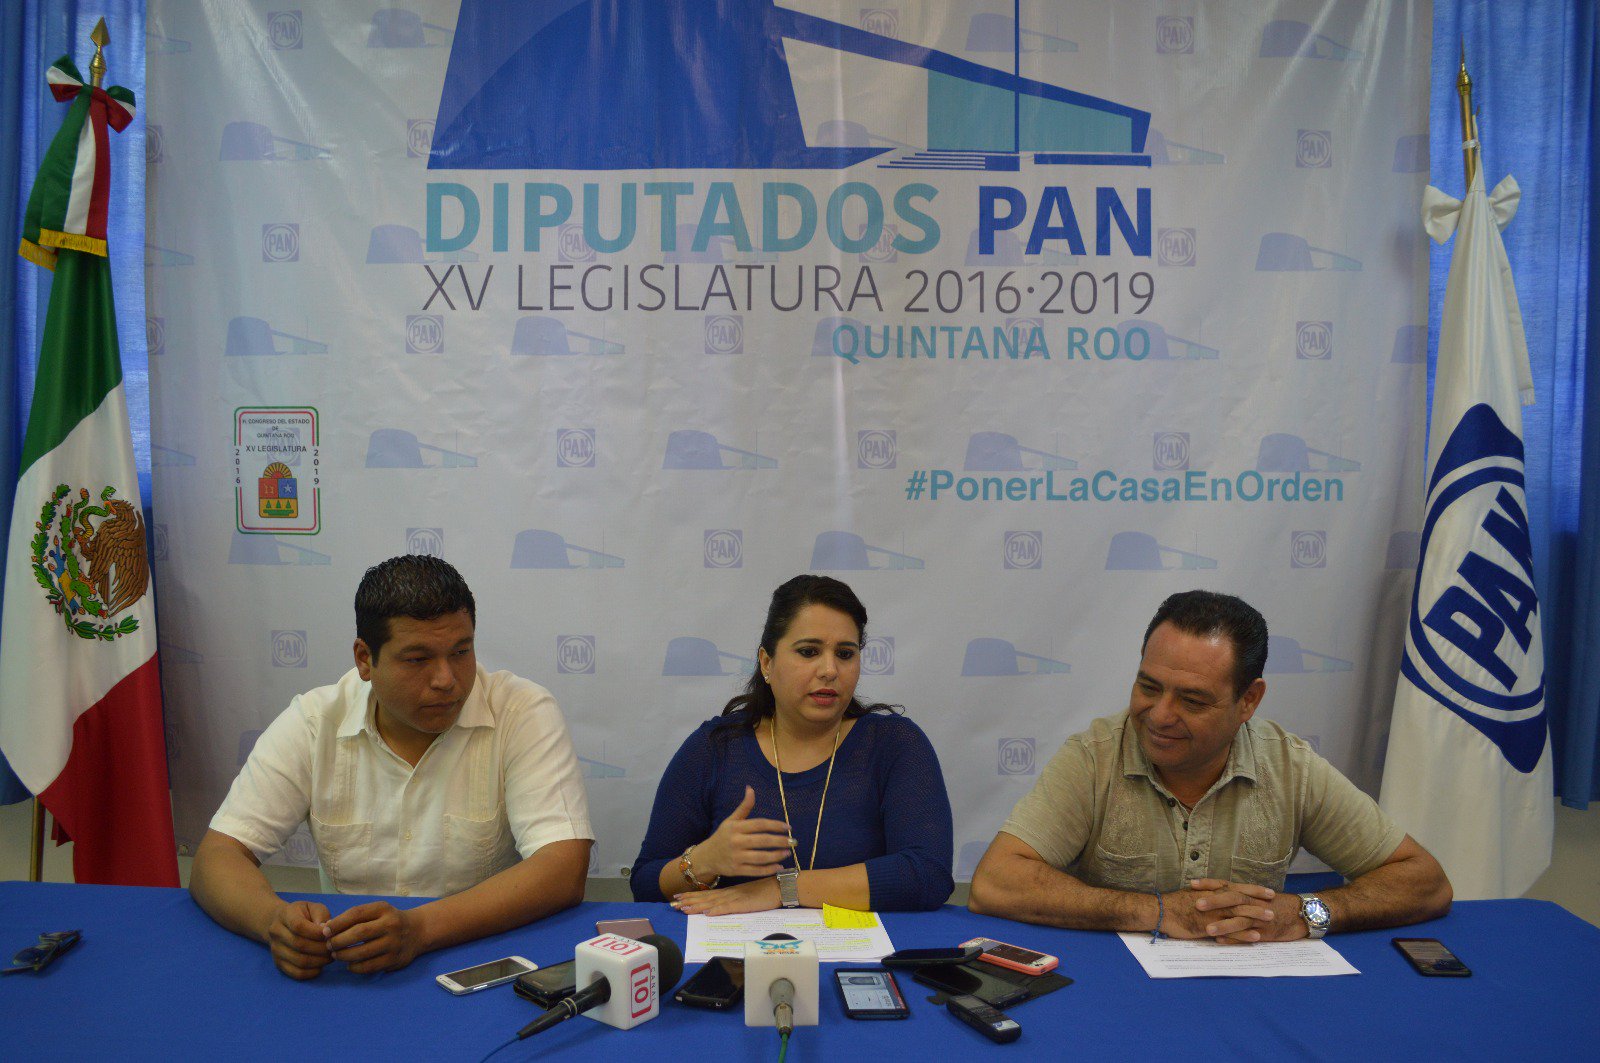 Conferencia de diputados del PAN. De izquierda a derecha: Fernando Zelaya, Mayuli Martínez y Jesús Zetina.